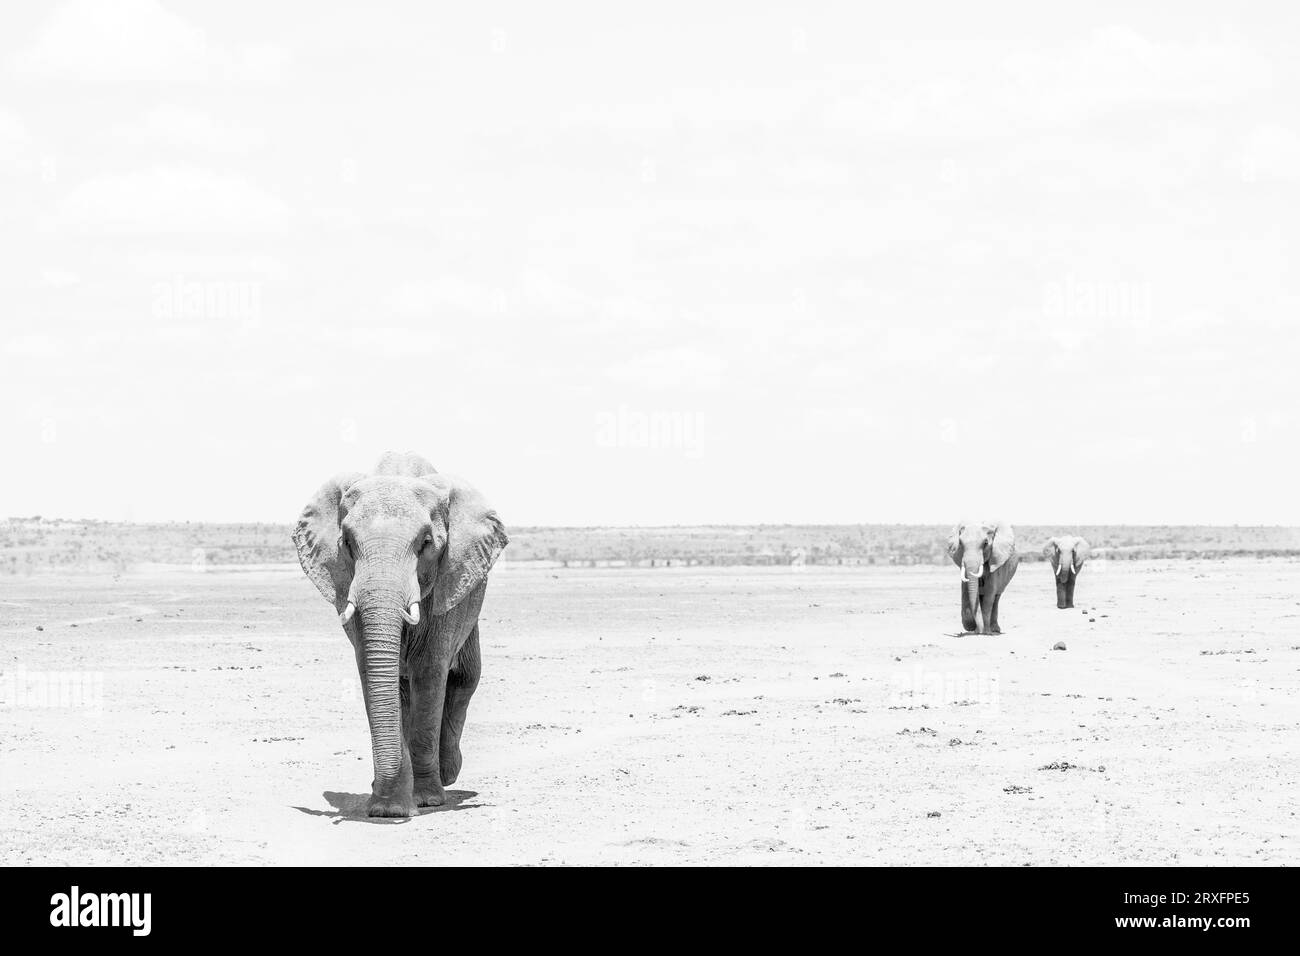 Elefantes africanos (Loxodonta africana) cruzando el lecho seco del lago, Parque Nacional Amboseli, Kajiado, Kenia Foto de stock